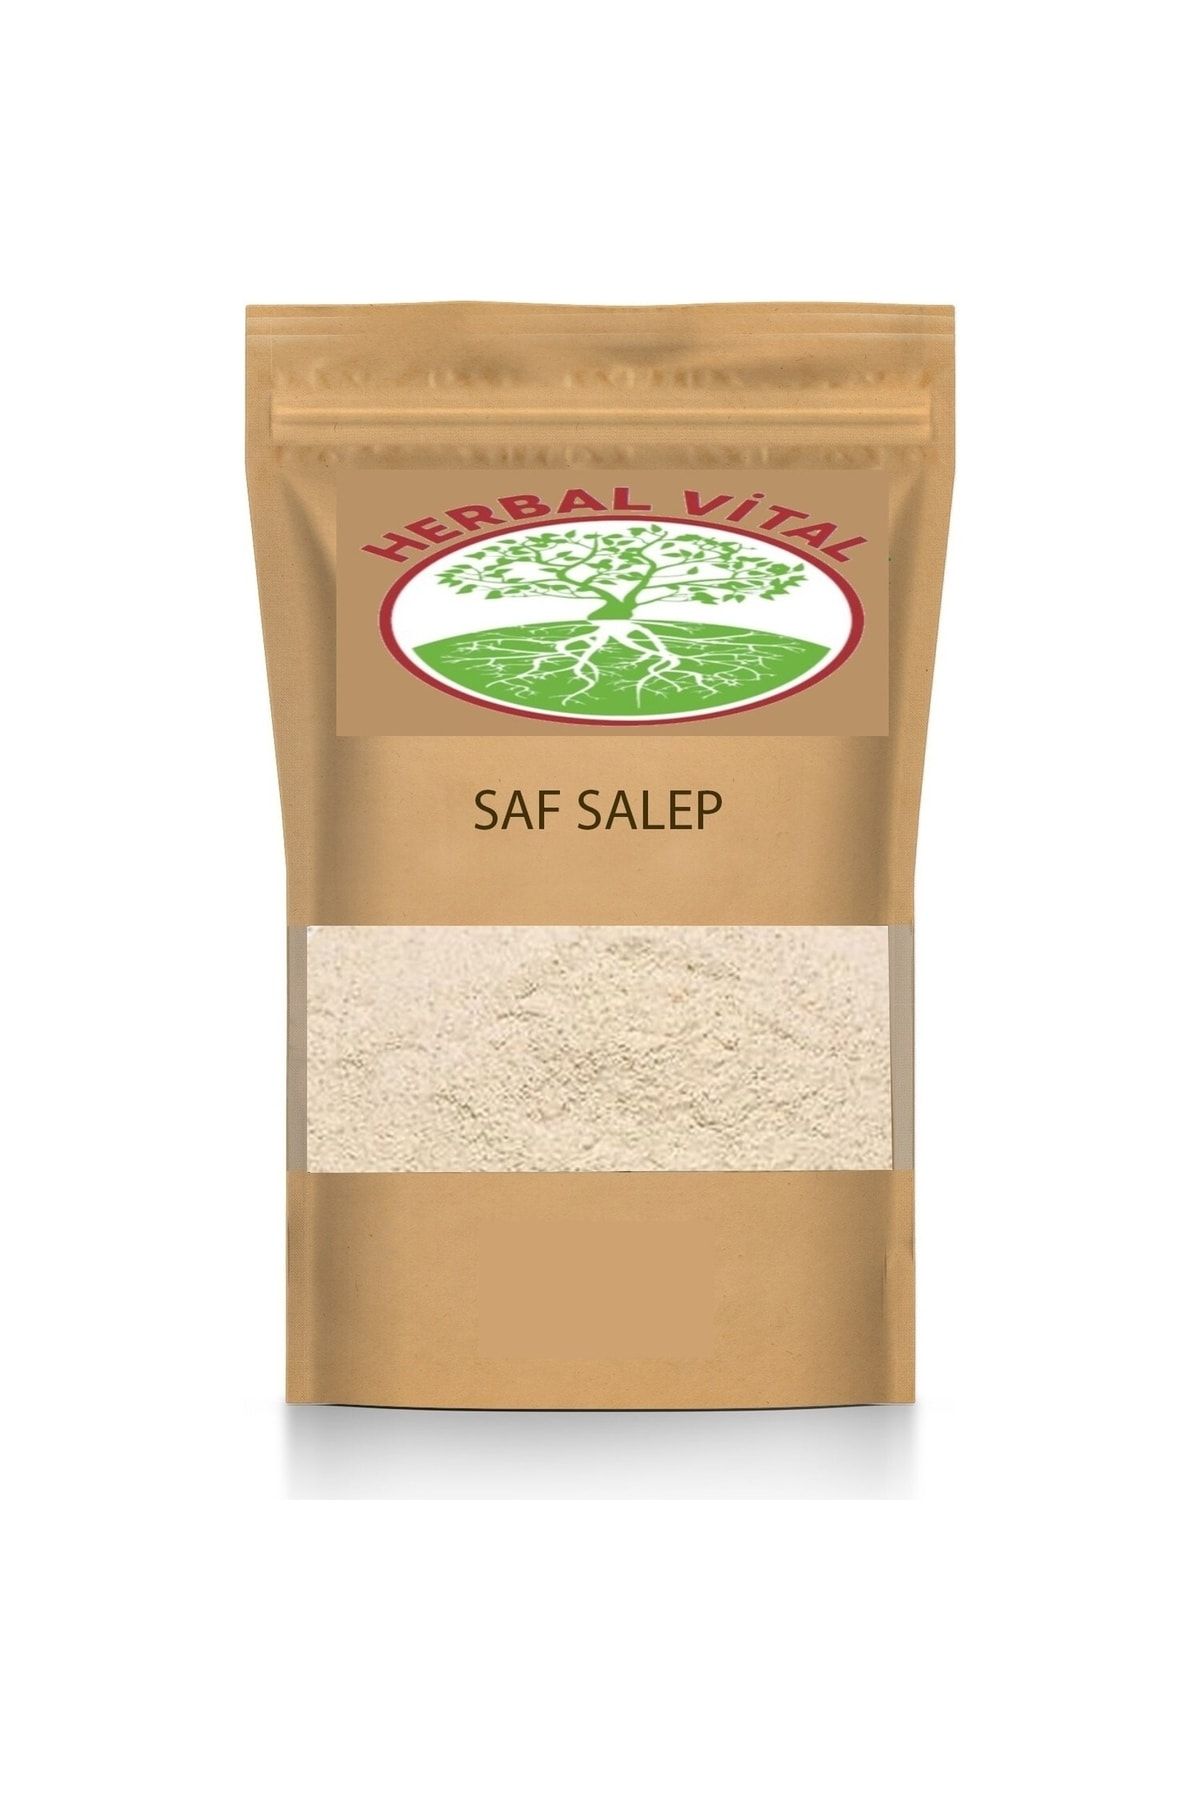 herbal vital Sahlep Saf Salep 100gram (dondurma Ve Içecek Yapımına Uygun Ürün)